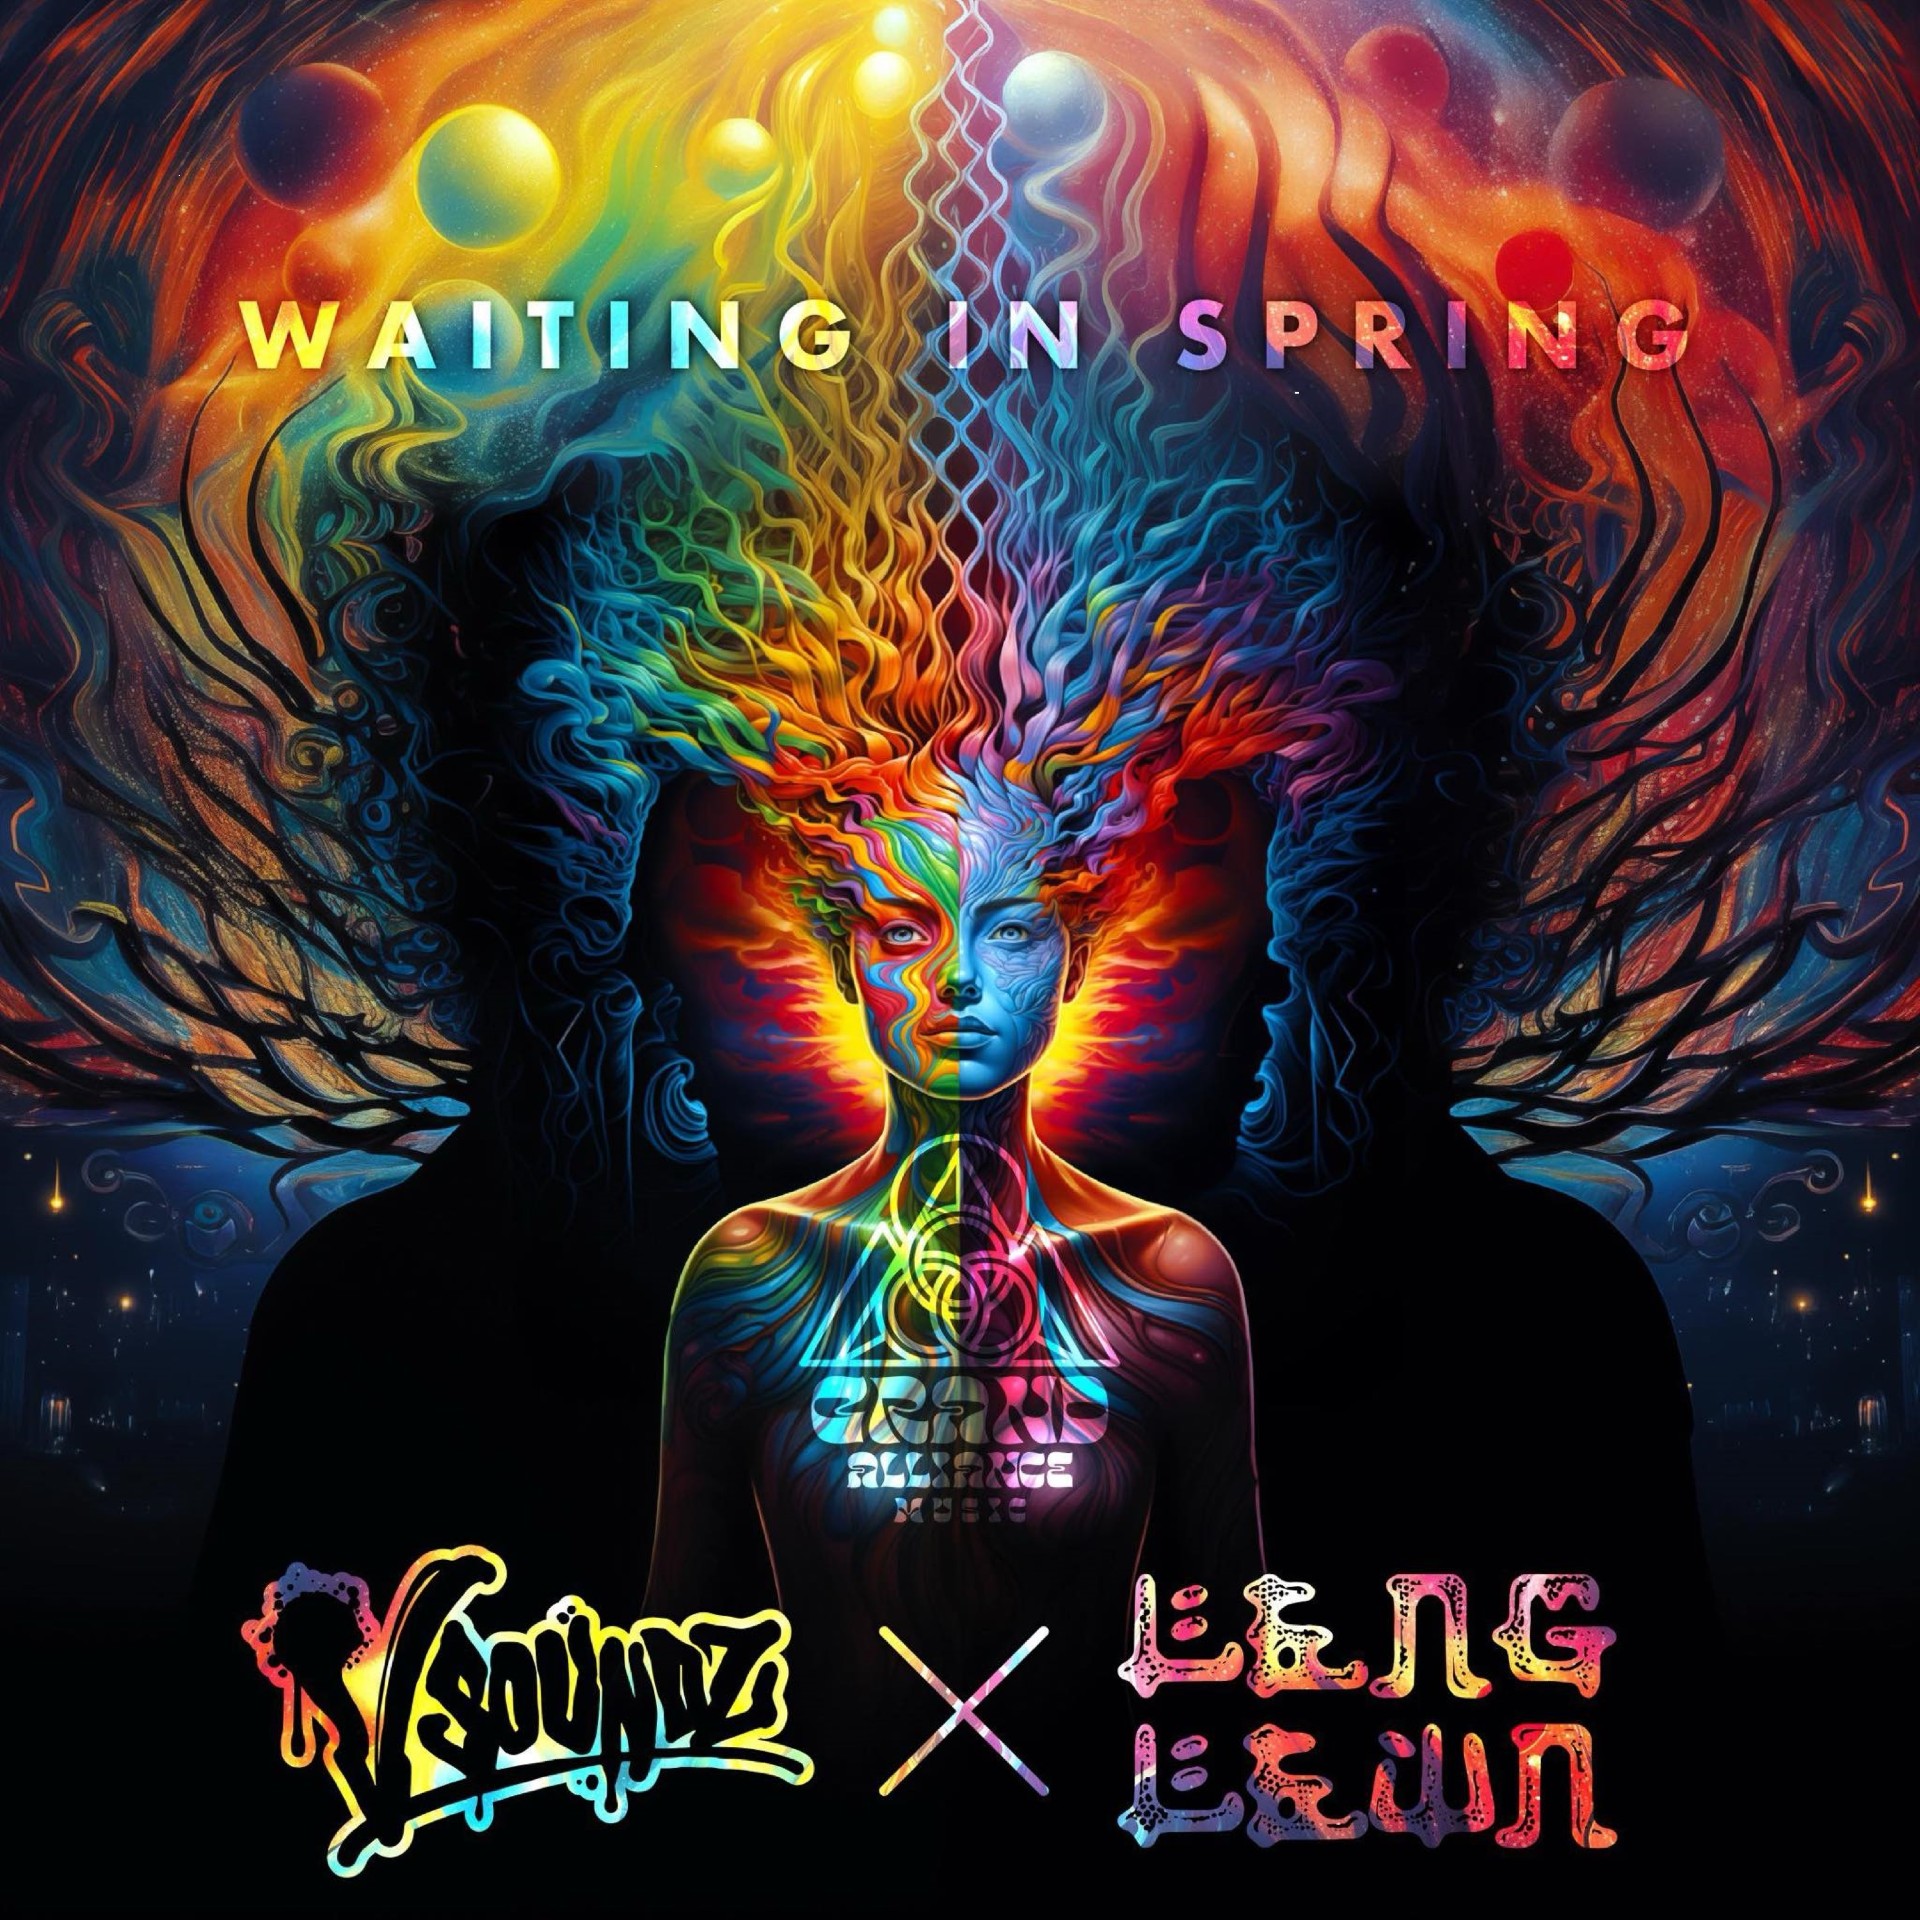 Vsoundz x Leng Lewn “Waiting In Spring” single artwork